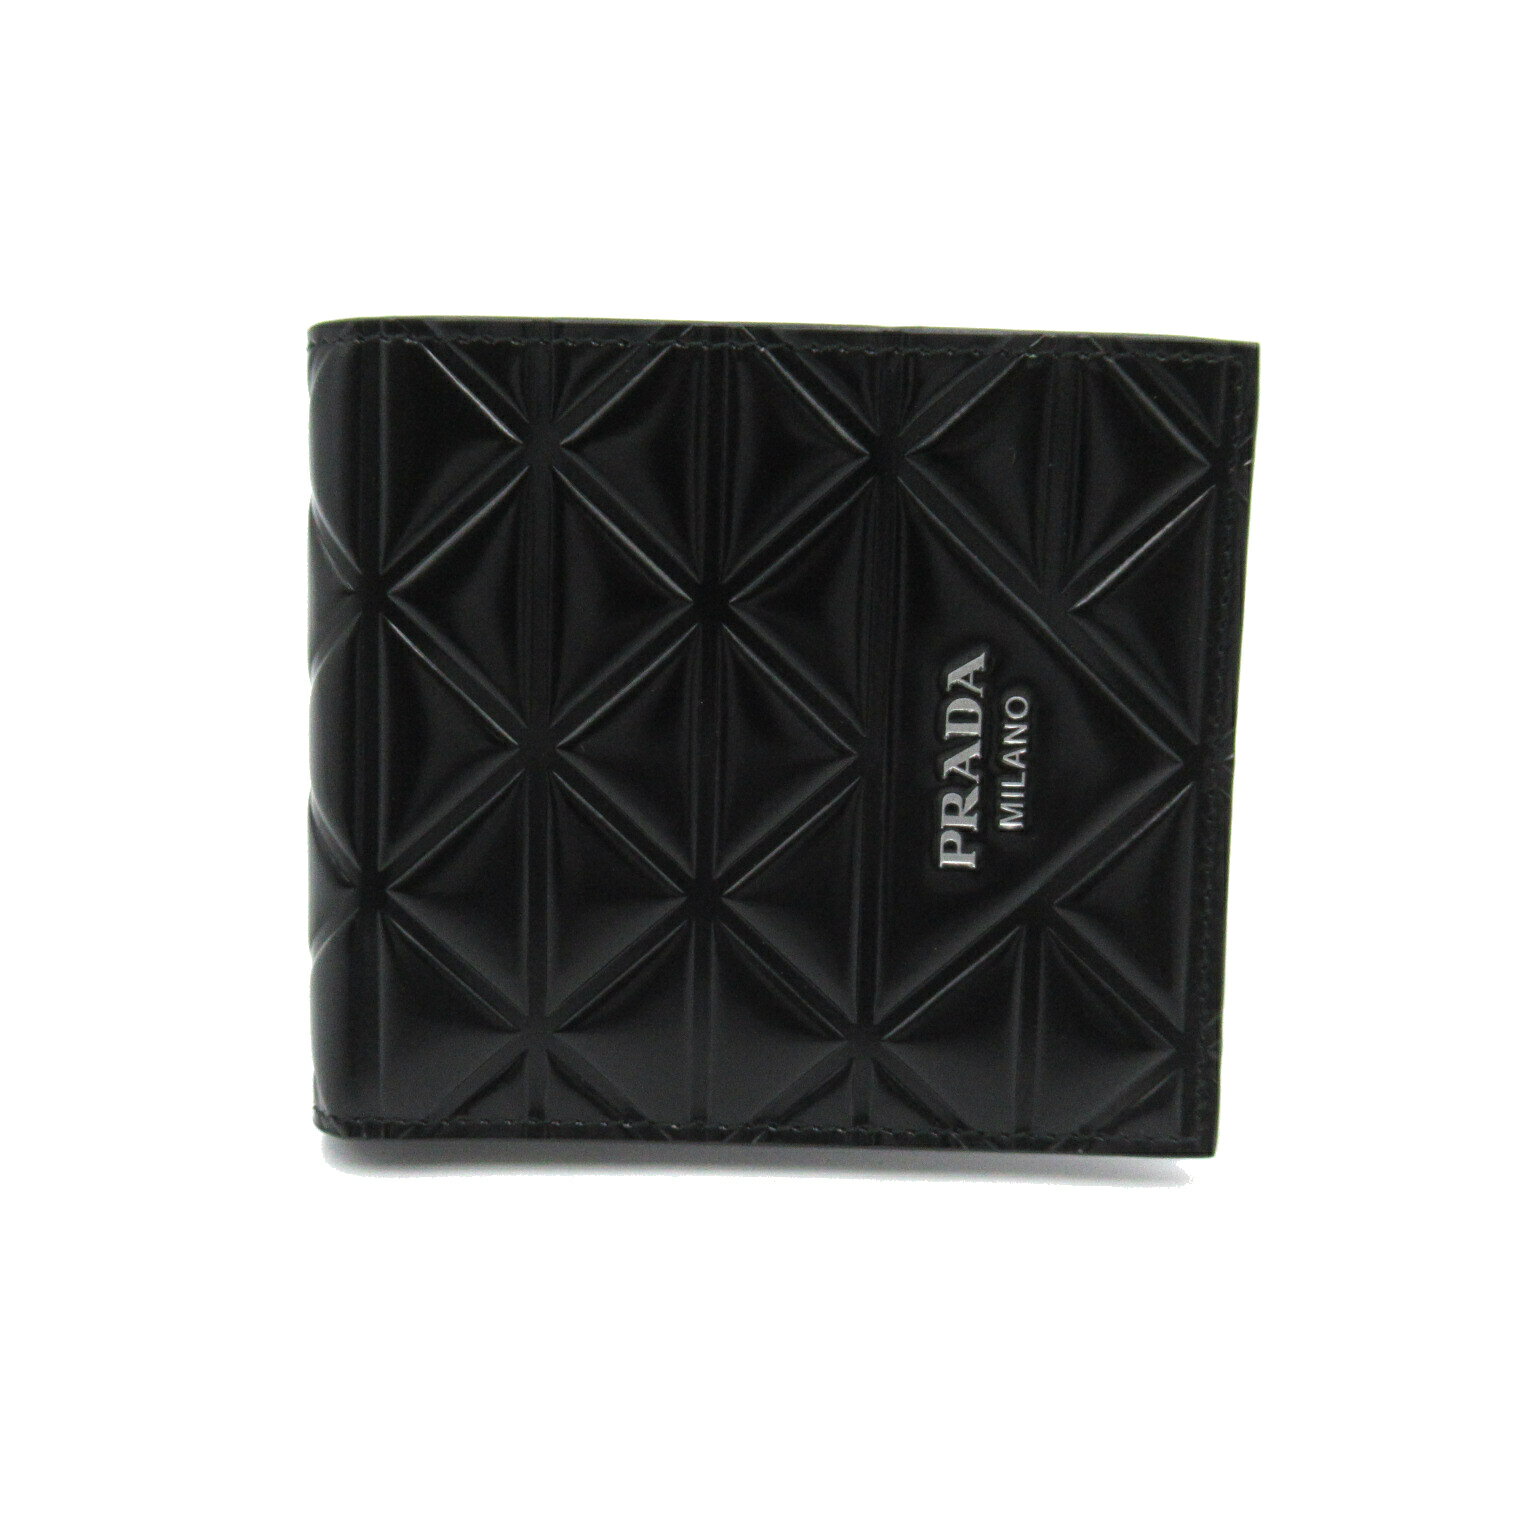 プラダ 財布（メンズ） プラダ PRADA 二つ折財布 二つ折り財布 財布 レザー メンズ ブラック系 2MO5132CNVF0002 【新品】